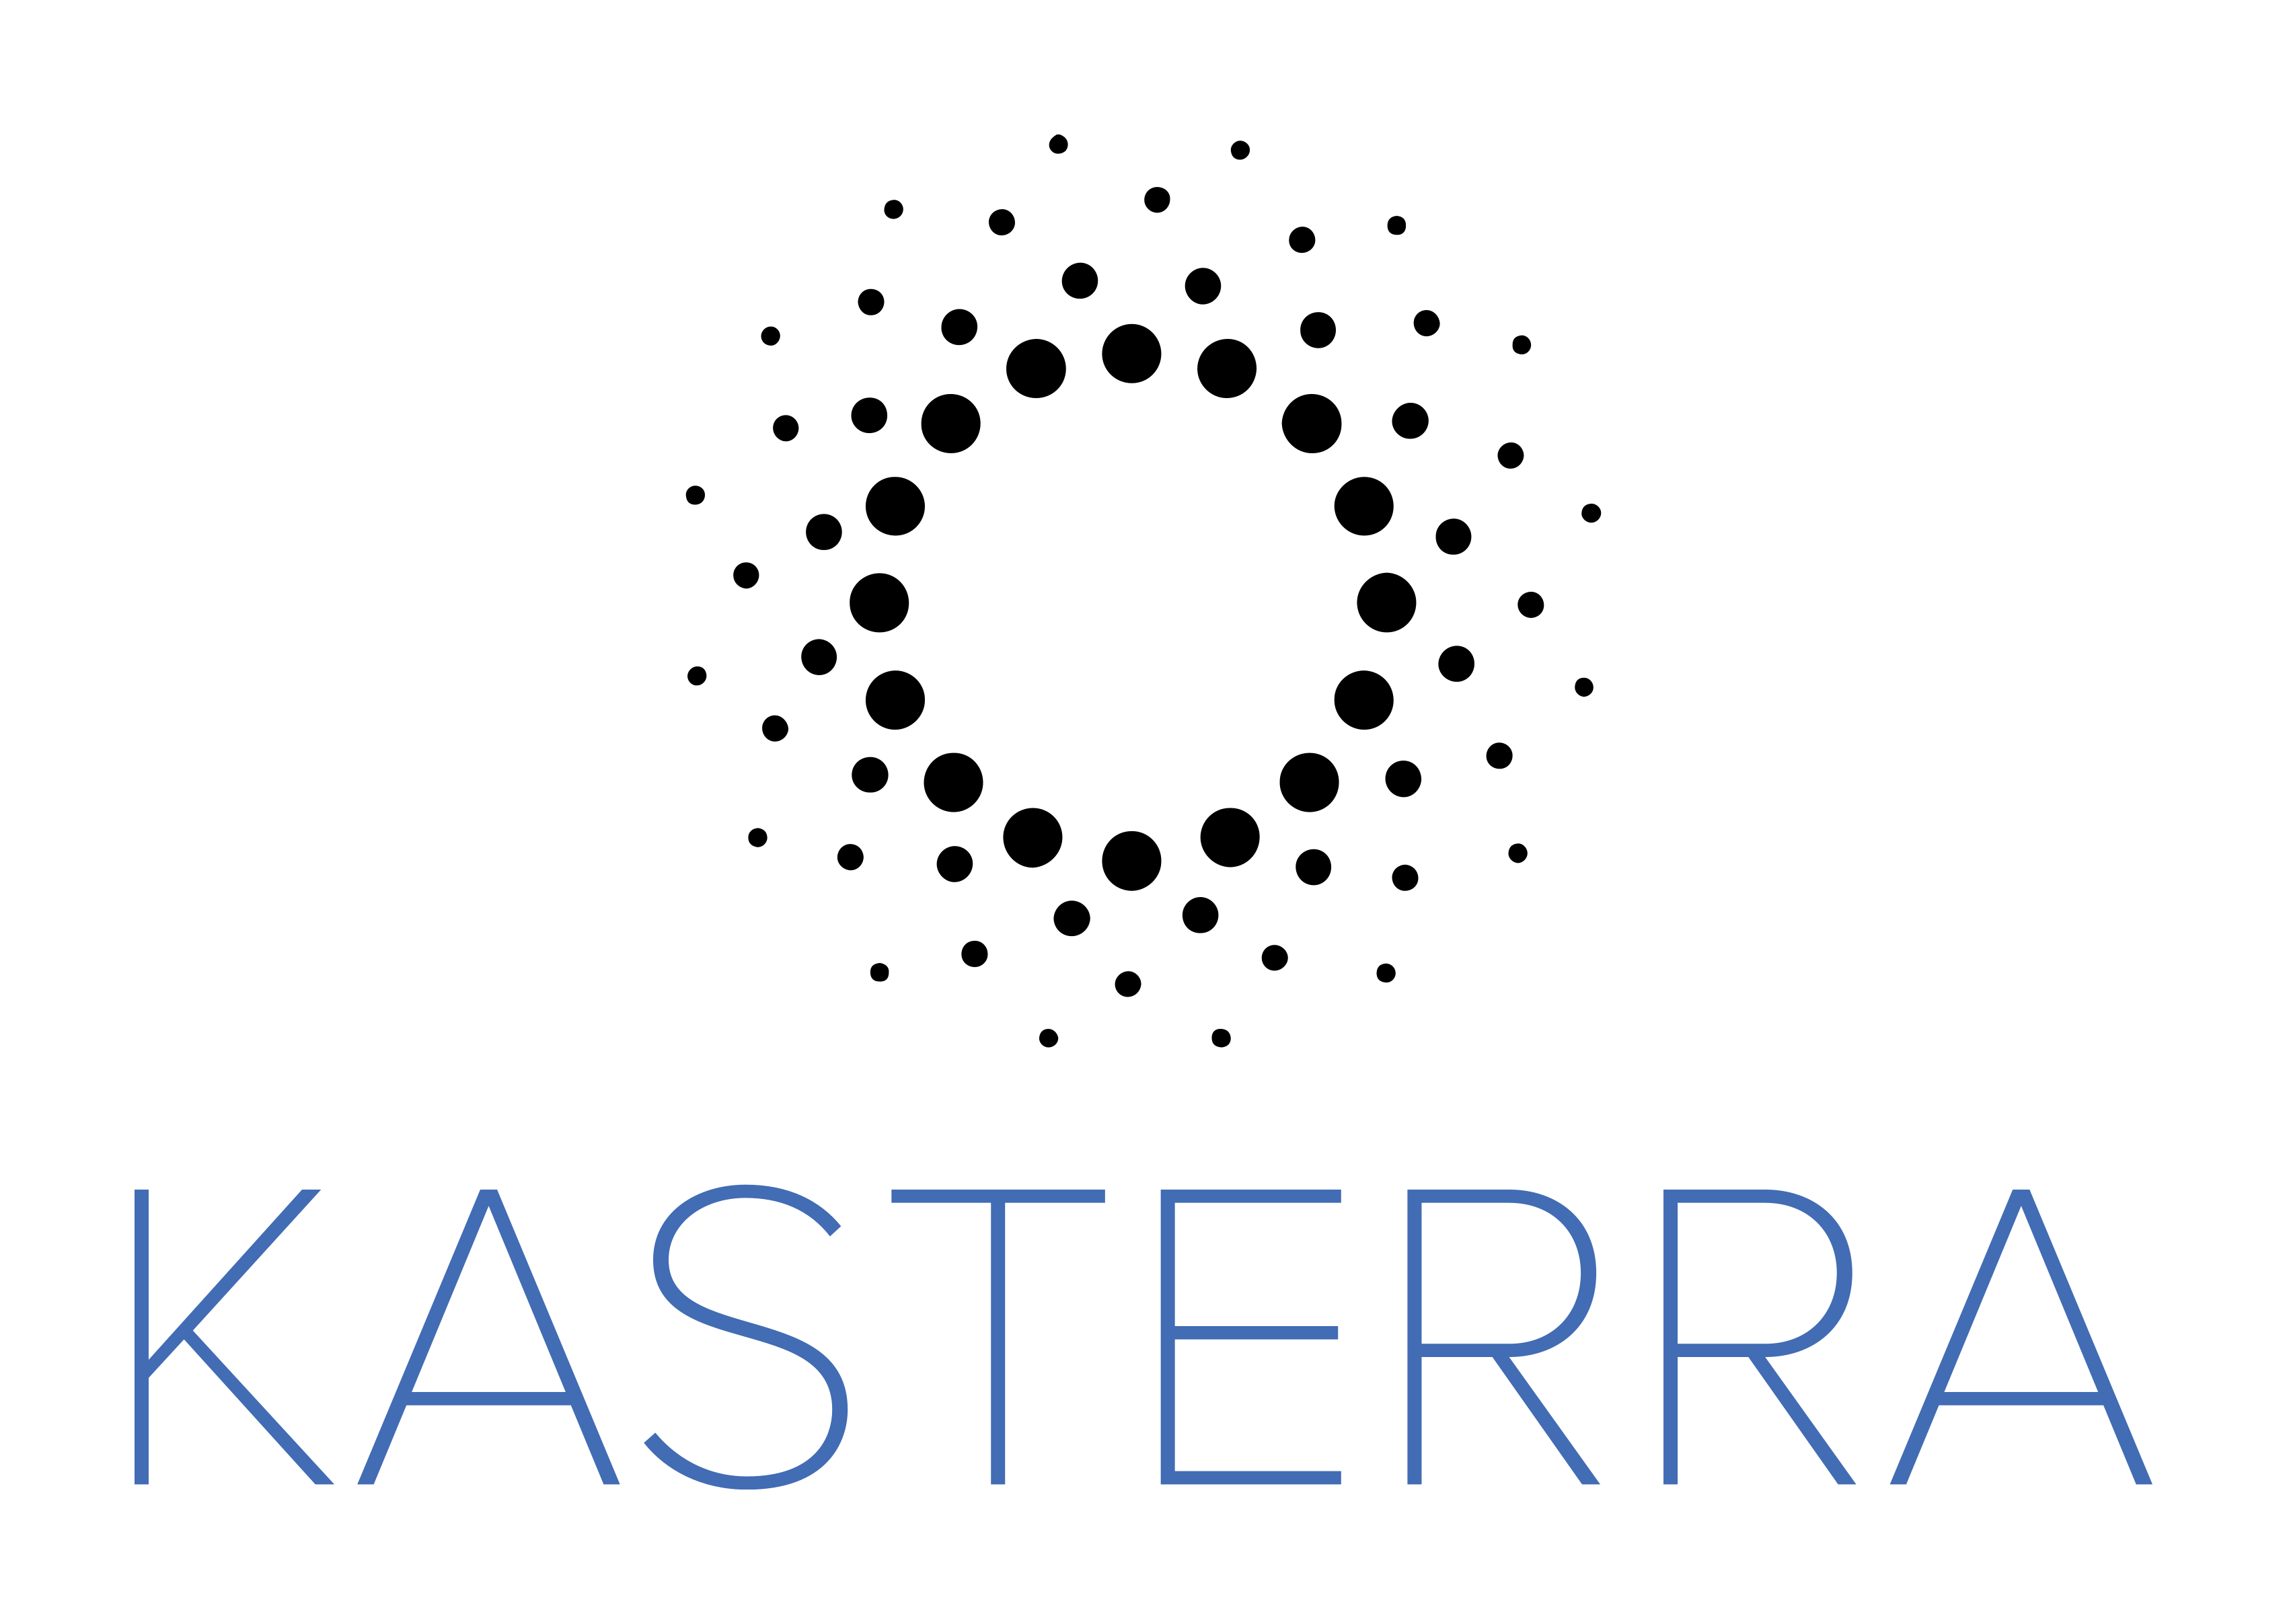 Kasterra logo